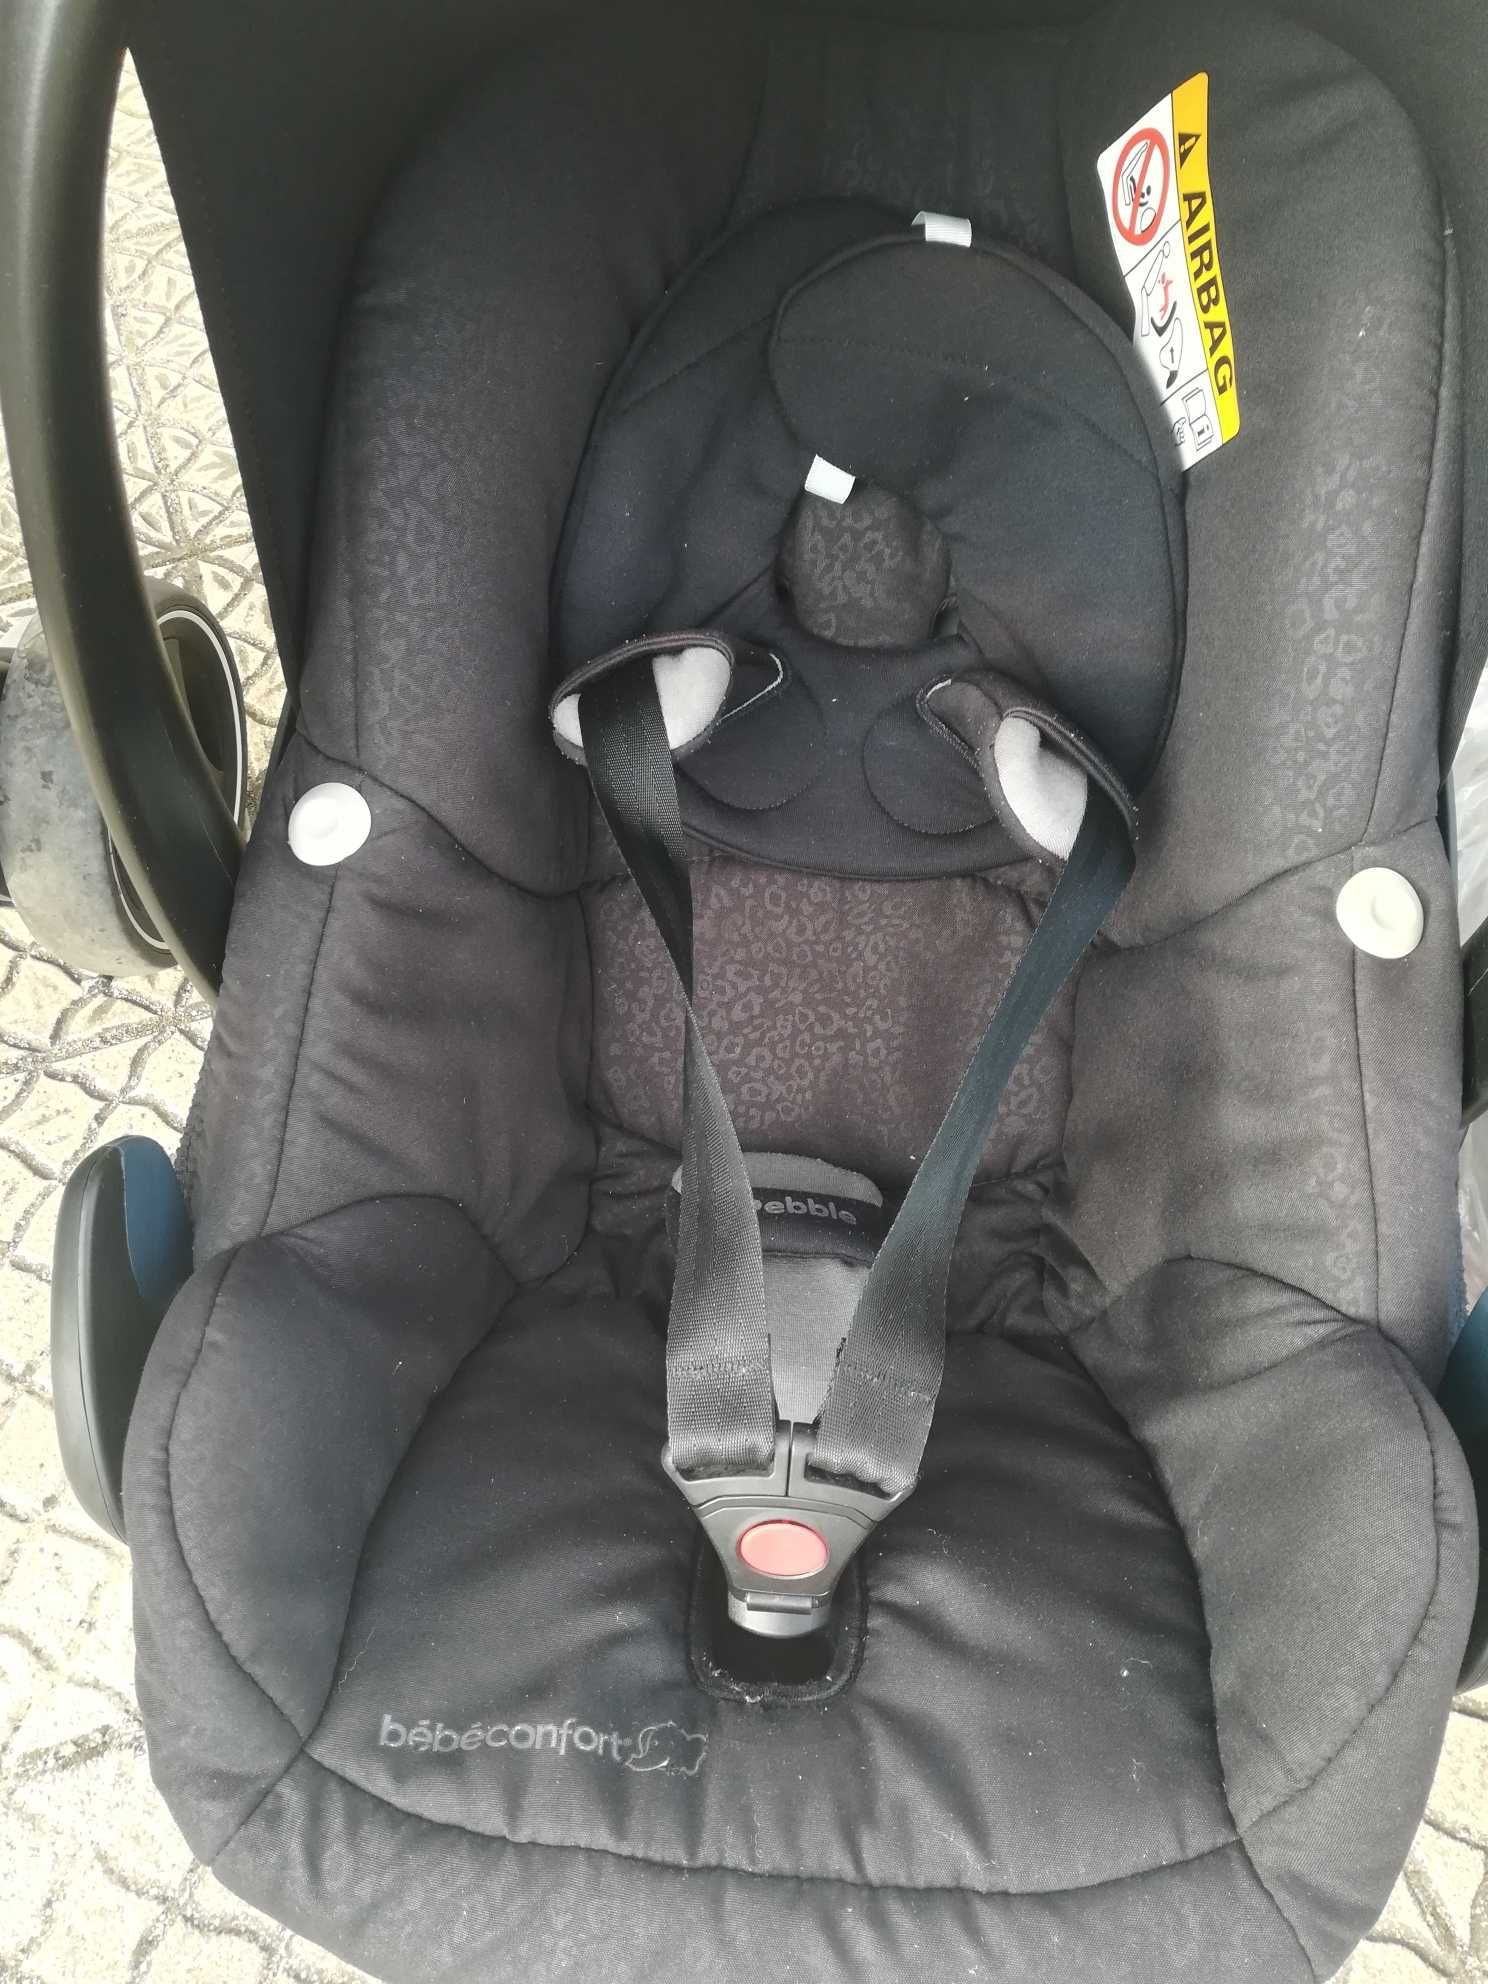 Carrinho de bébé + Ovo + Isofix+ Cadeira para alimentação+ 2 carrinhos